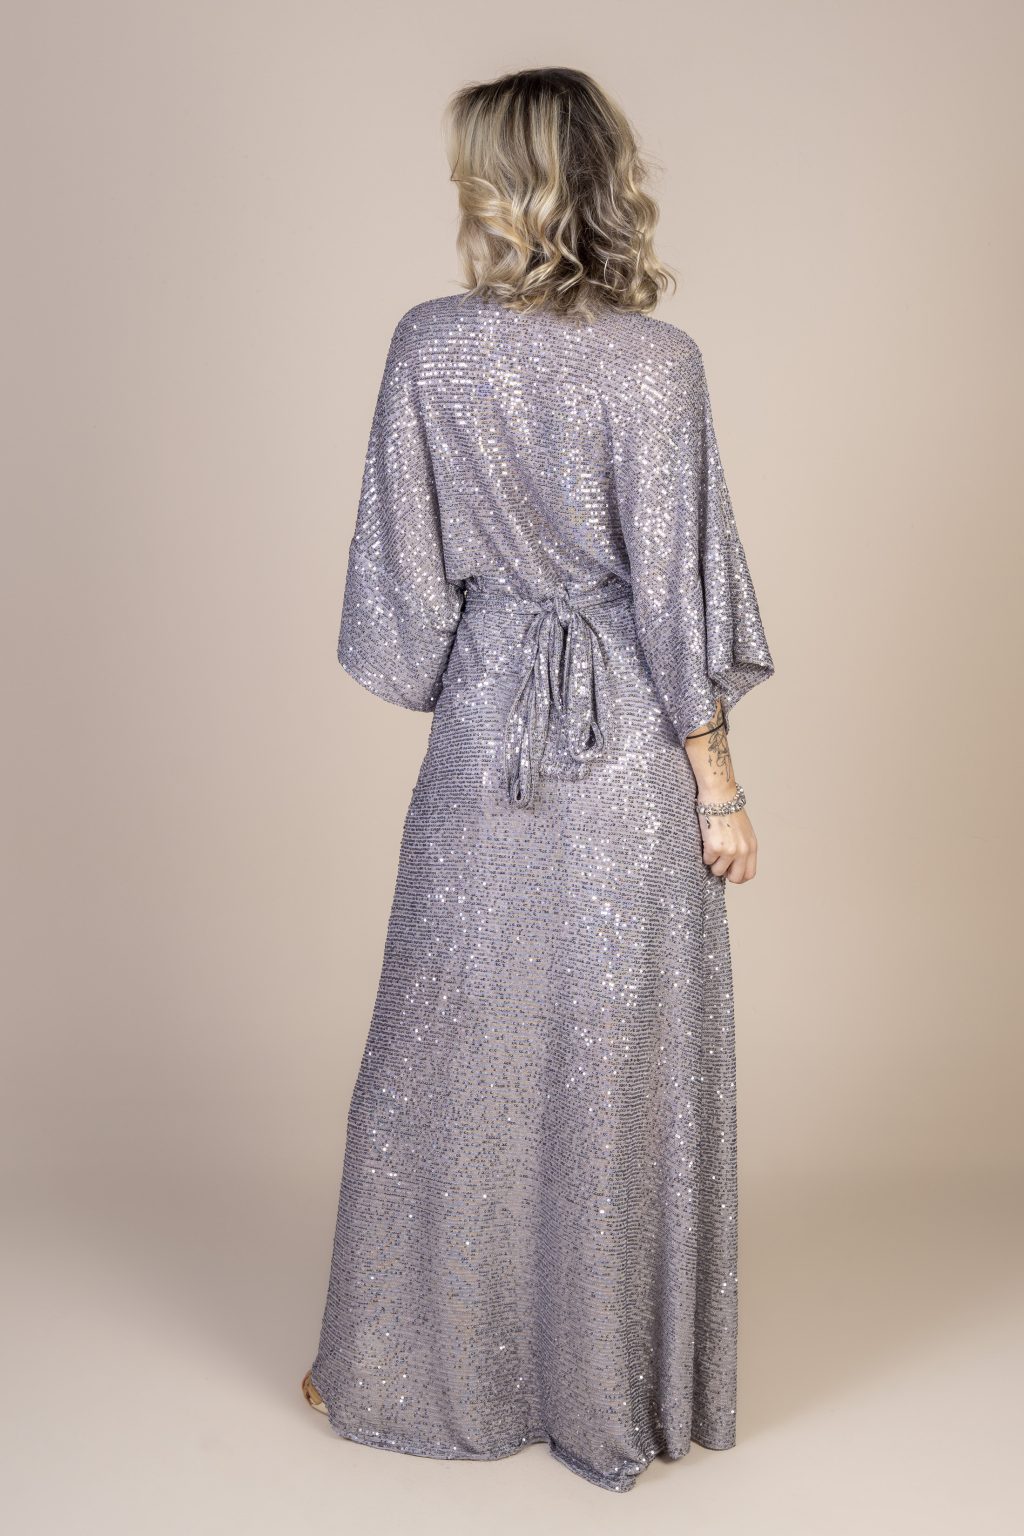 Mulher loira usando um vestido longo manga curta paetê prata brilhoso com amarração na cintura conforto praticidade elegância festa joker maria sanz kimono quimono